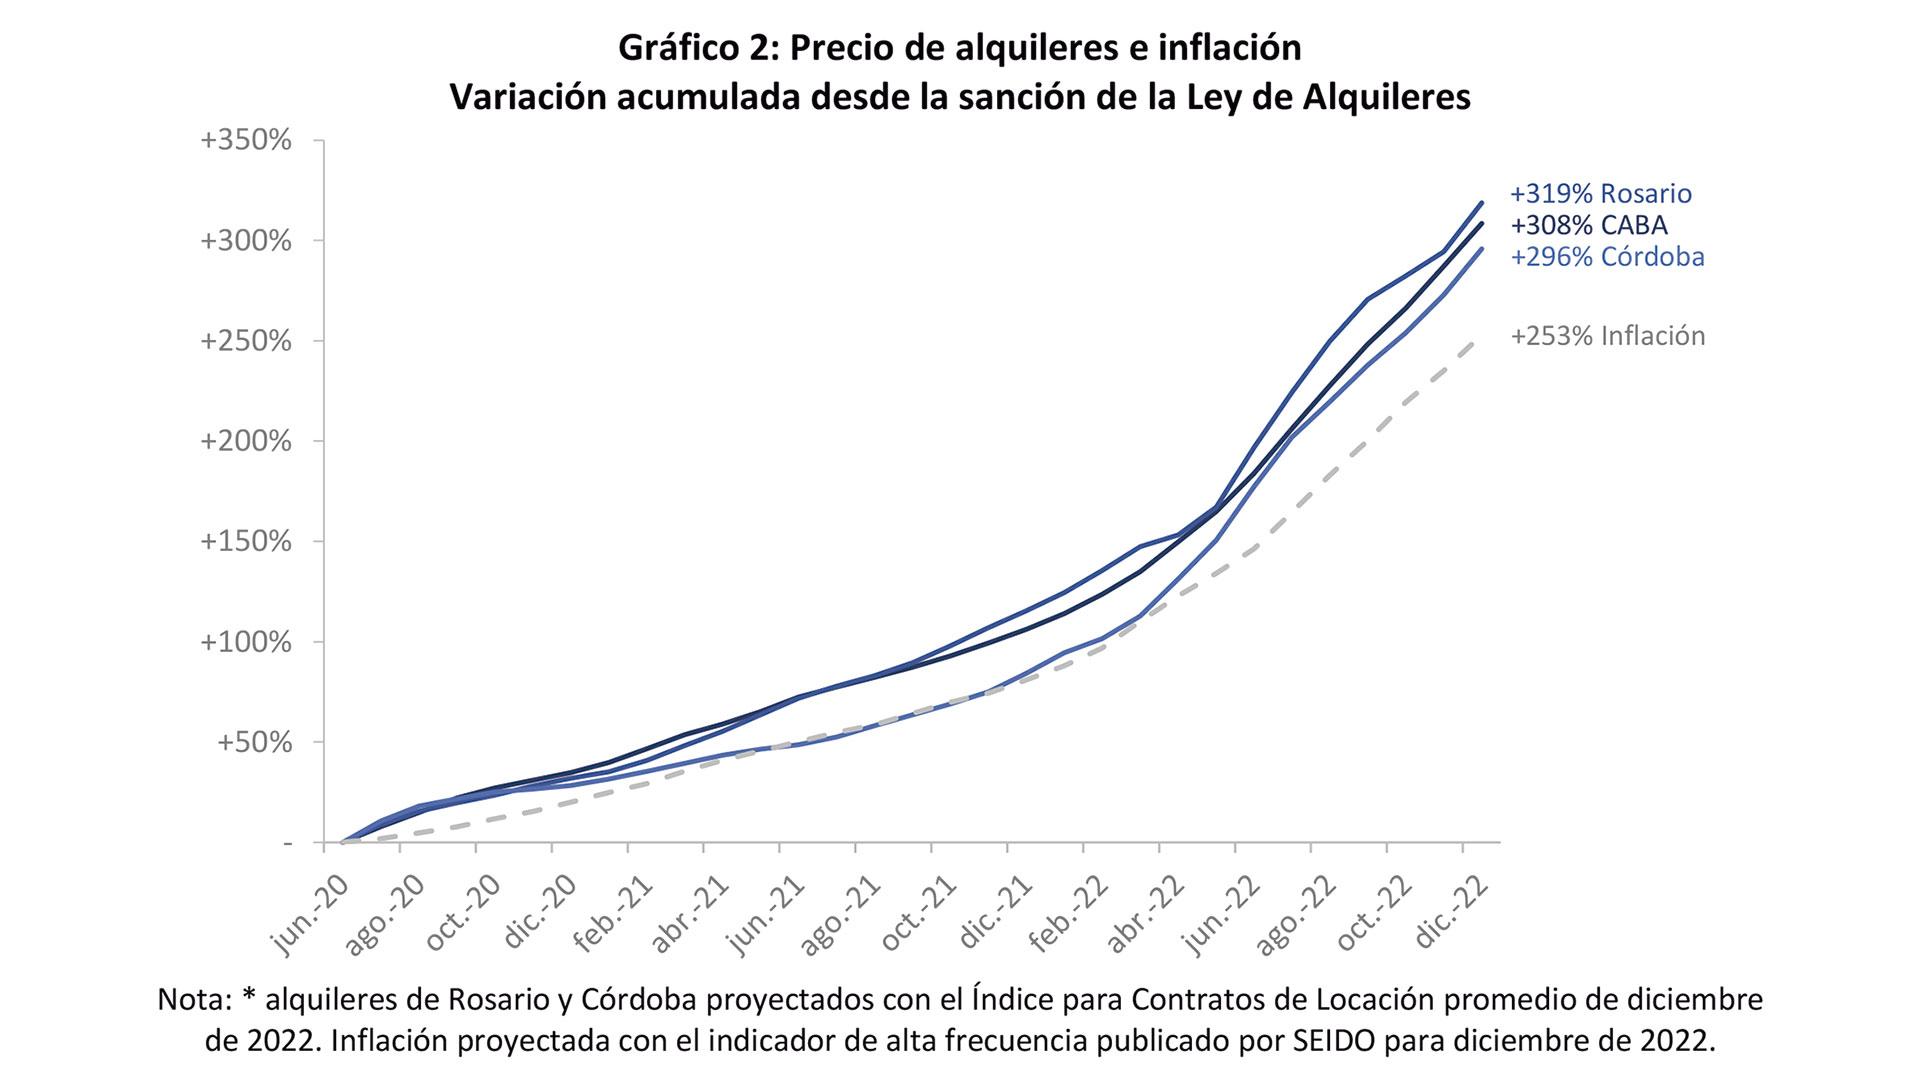 Fuente: Instituto de Investigaciones Económicas de la Bolsa de Comercio de Córdoba